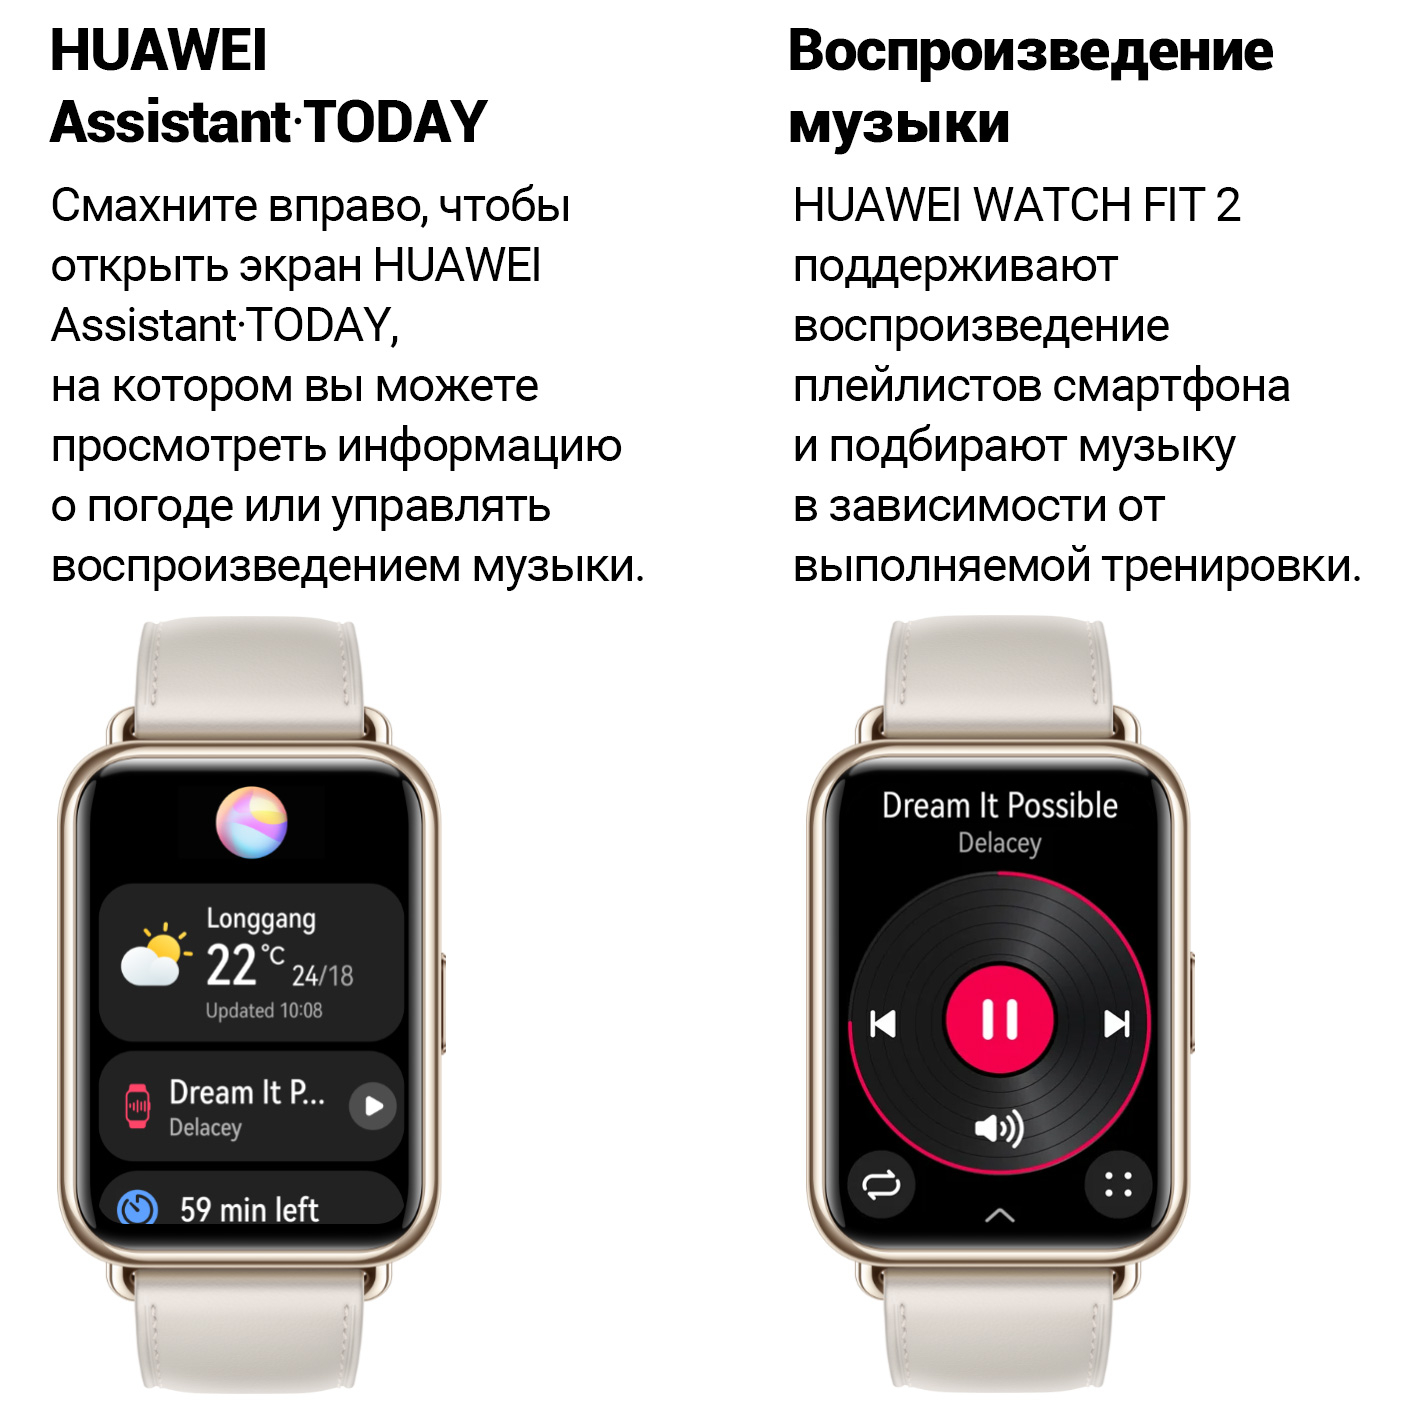 Как настроить часы huawei fit 2. Смарт часы Хуавей фит 2. Часы Huawei watch Fit 2. Смарт часы Хуавей вотч фит. Смарт-часы Huawei Fit 2 Classic Edition.